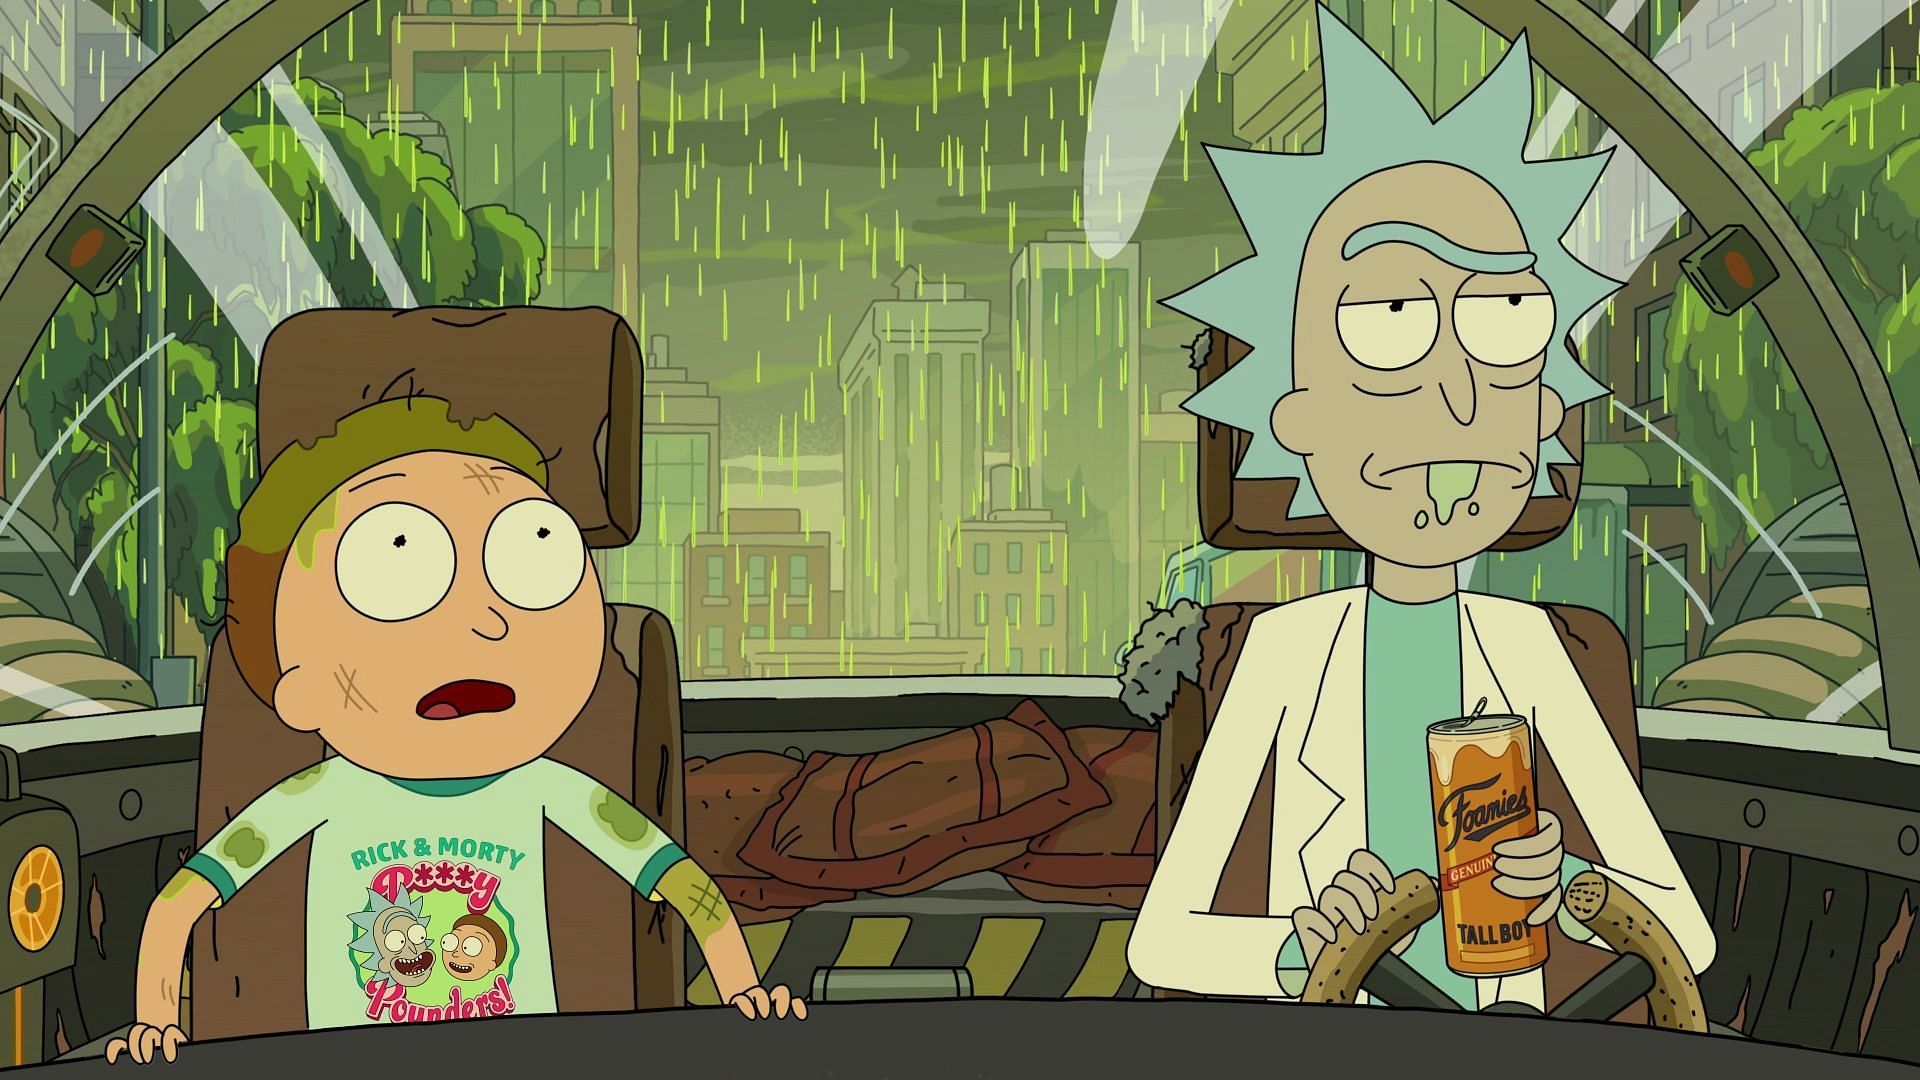 Rick and Morty (Image via Adult Swim)